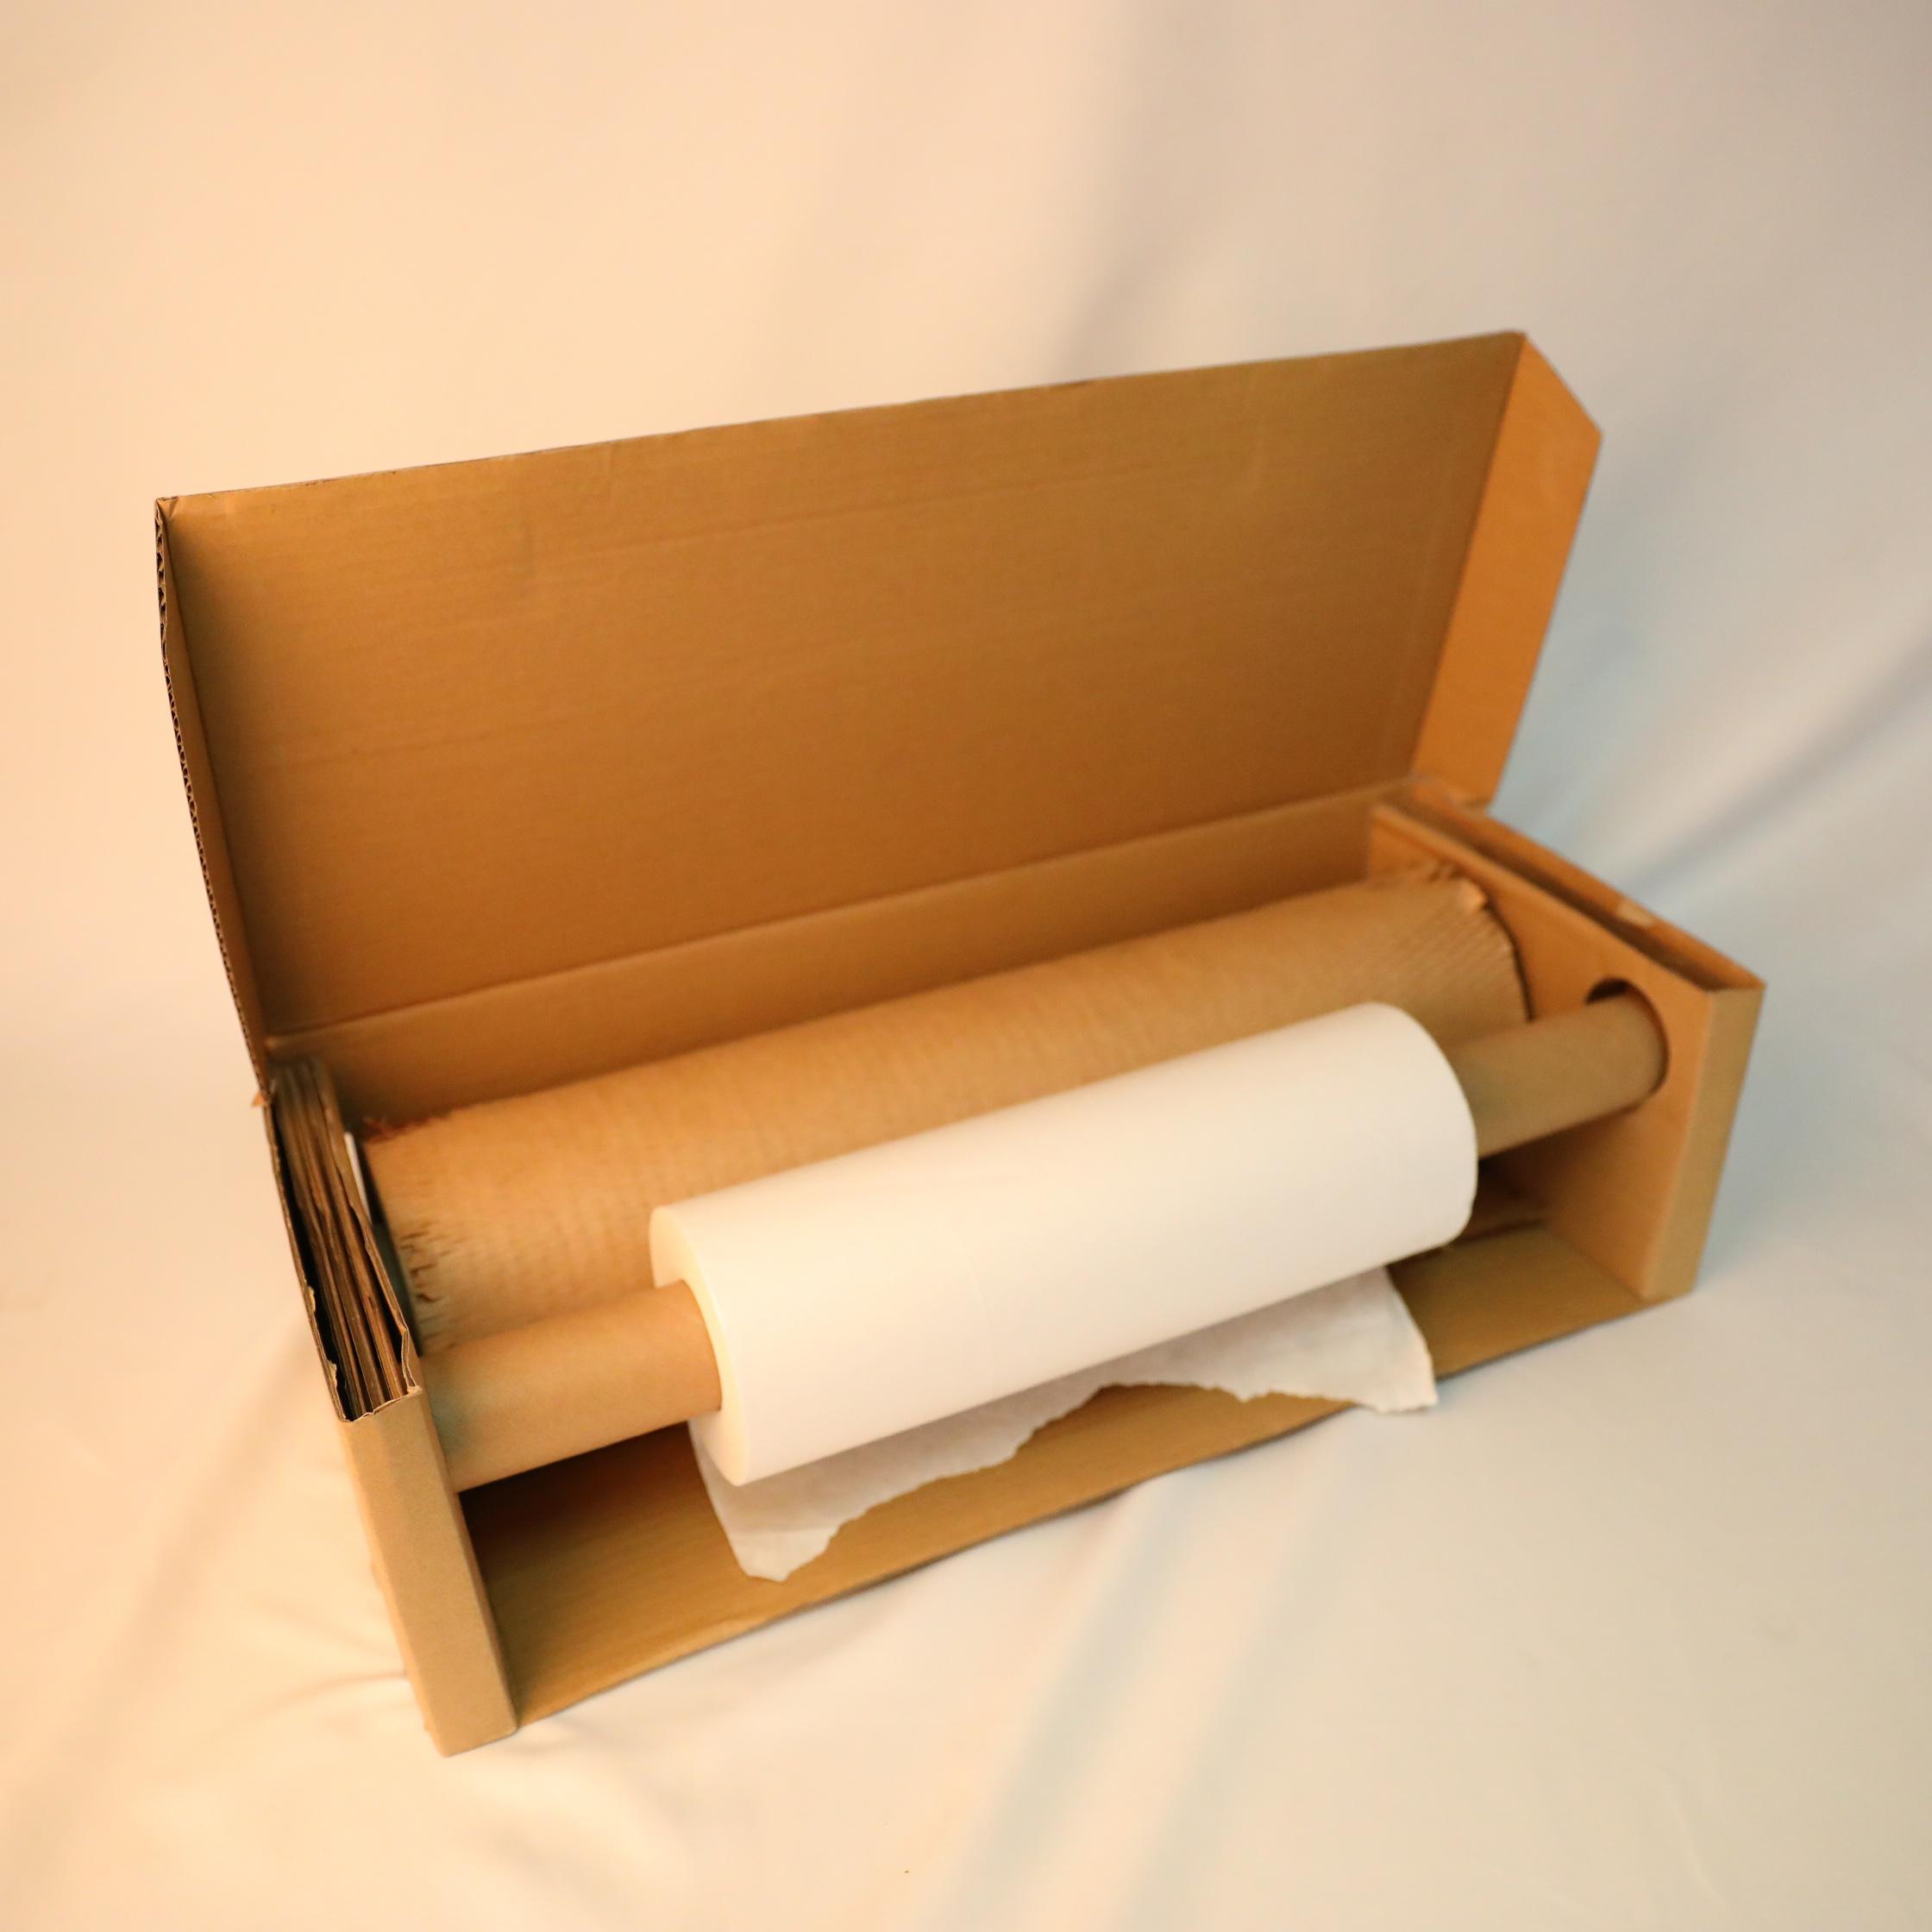 Hochwertige Wabenpapierrollen zum Verpacken